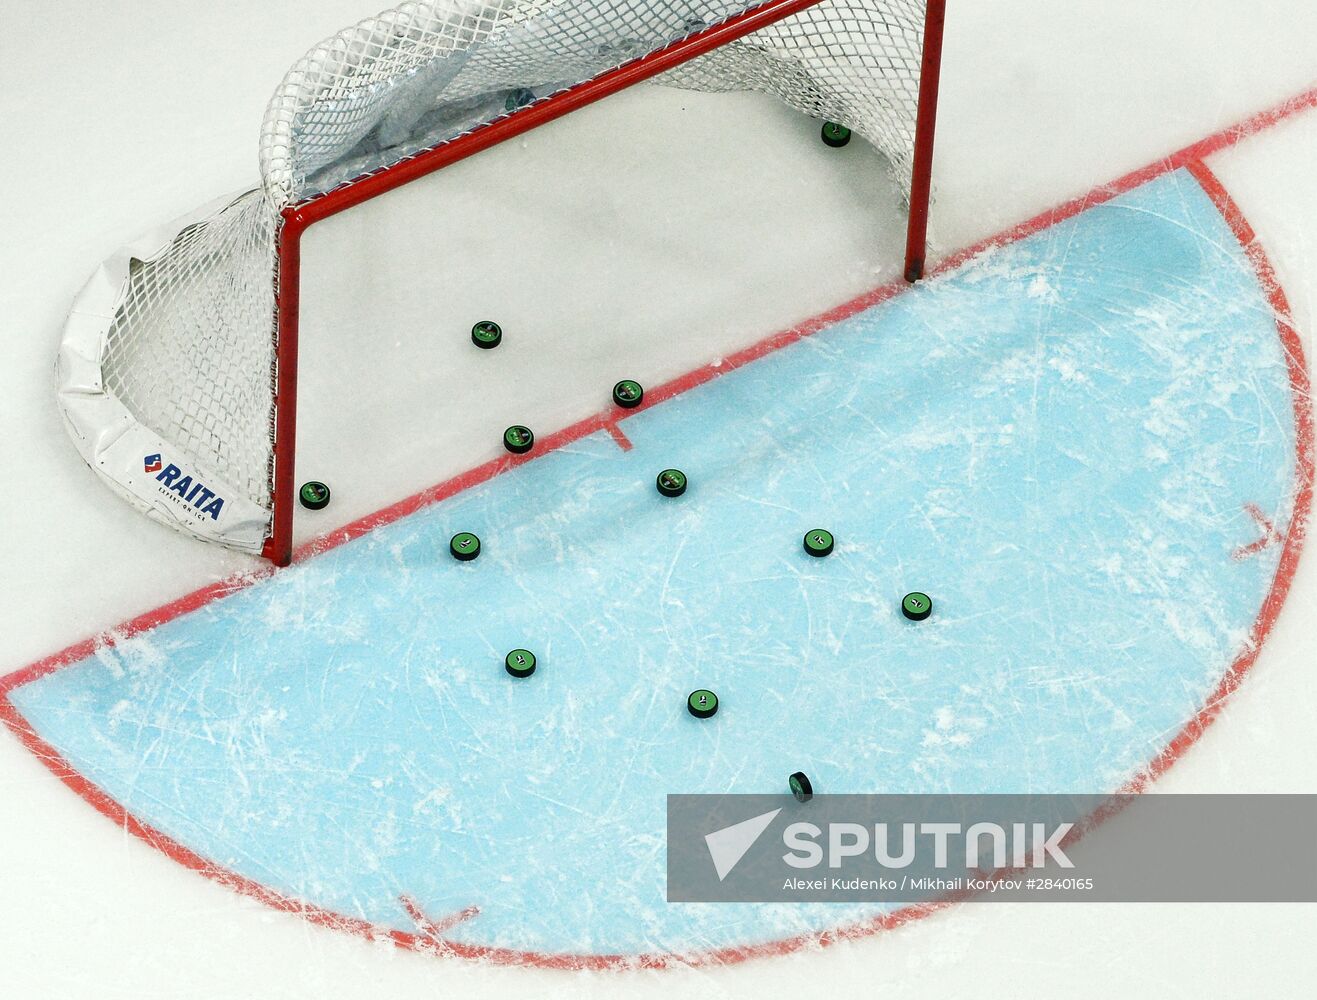 2016 IIHF World Championships. Sweden vs. Latvia